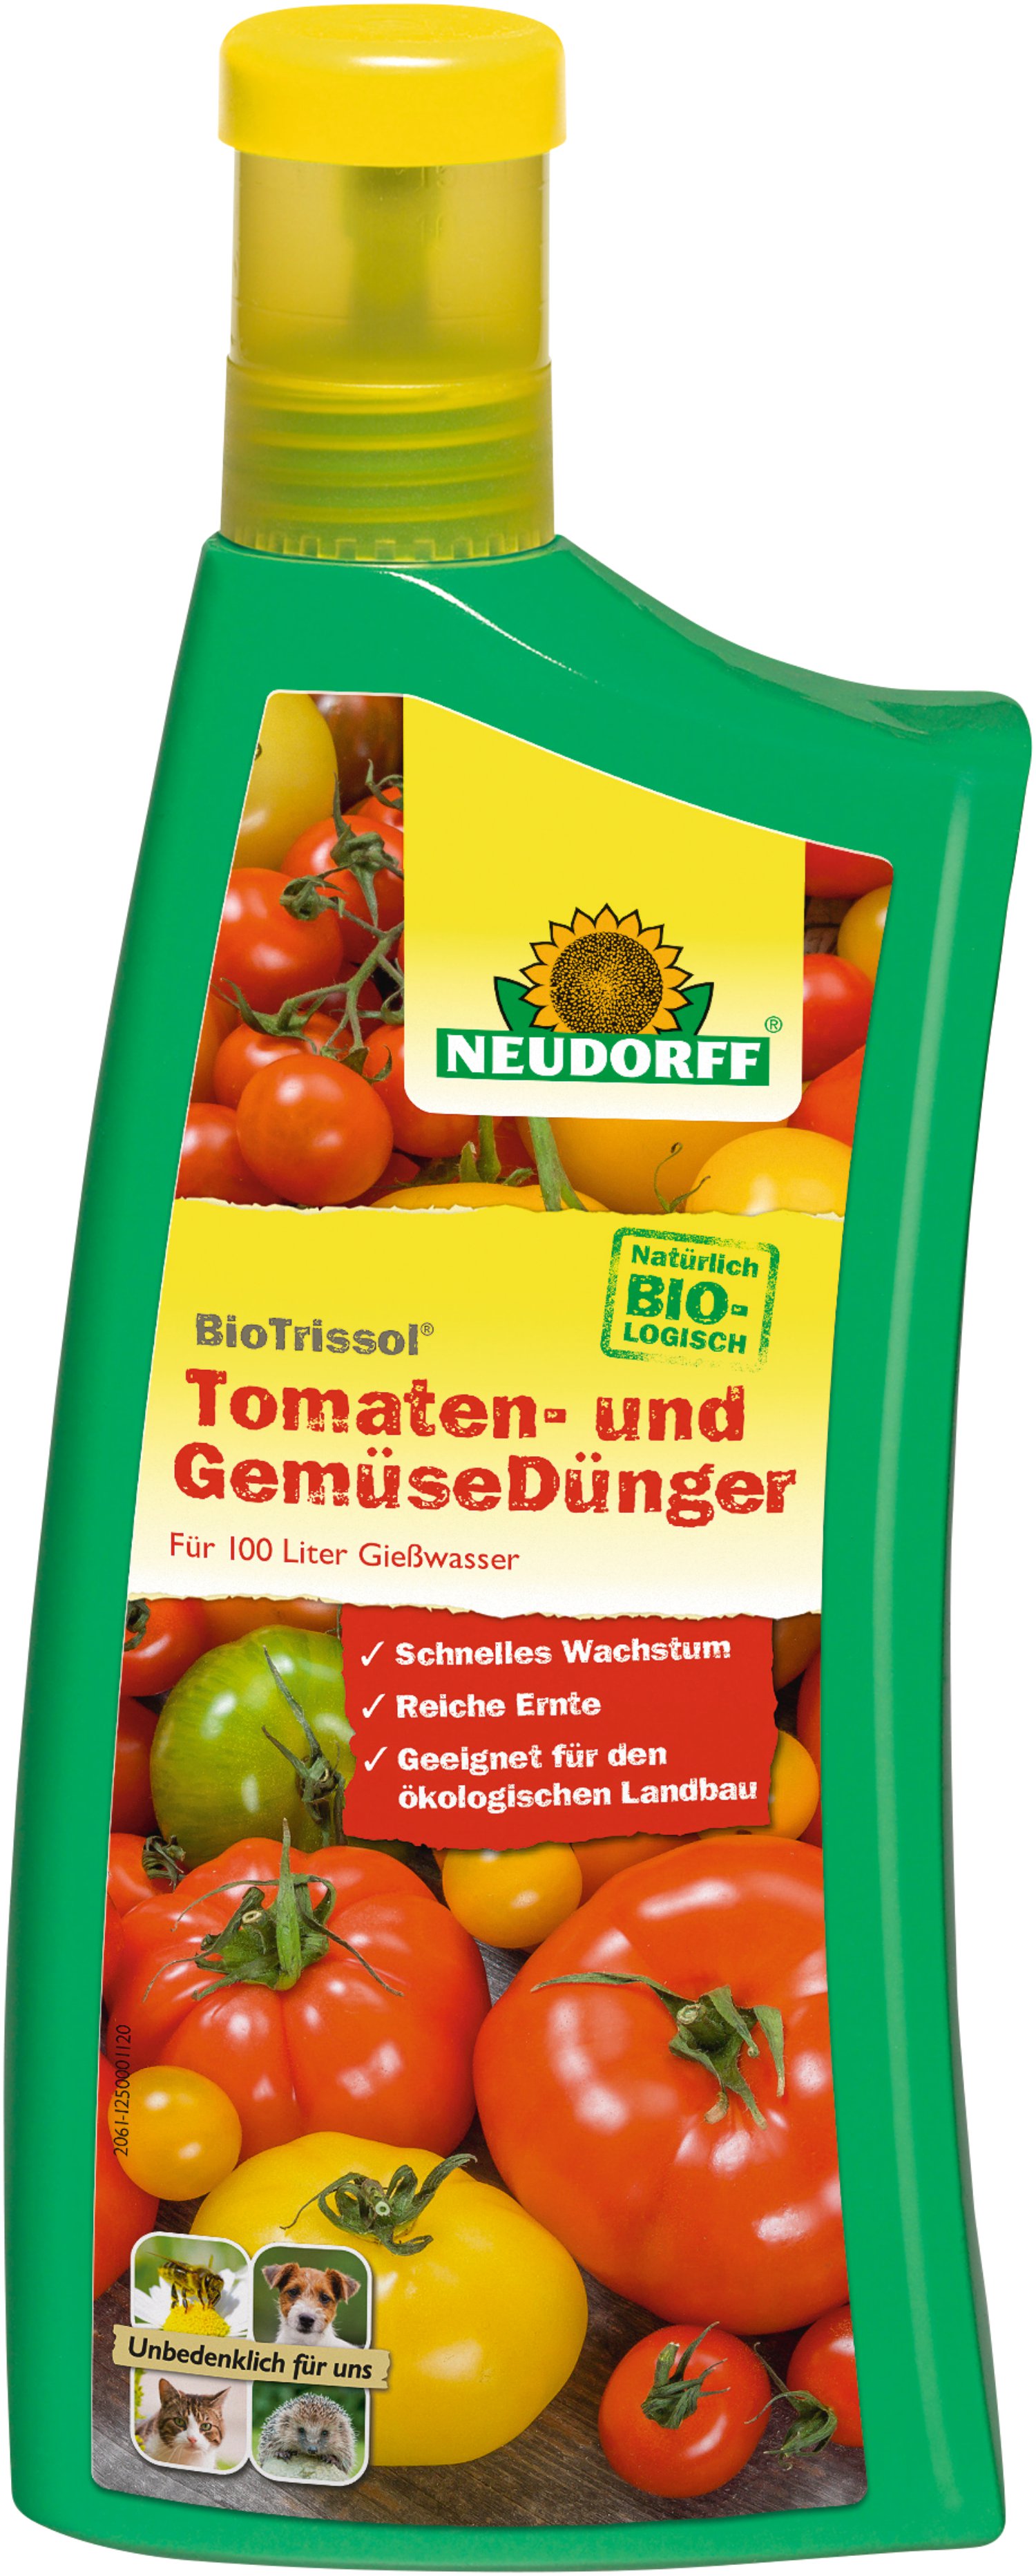 NEUDORFF® BioTrissol® Tomaten- und GemüseDünger 1 l